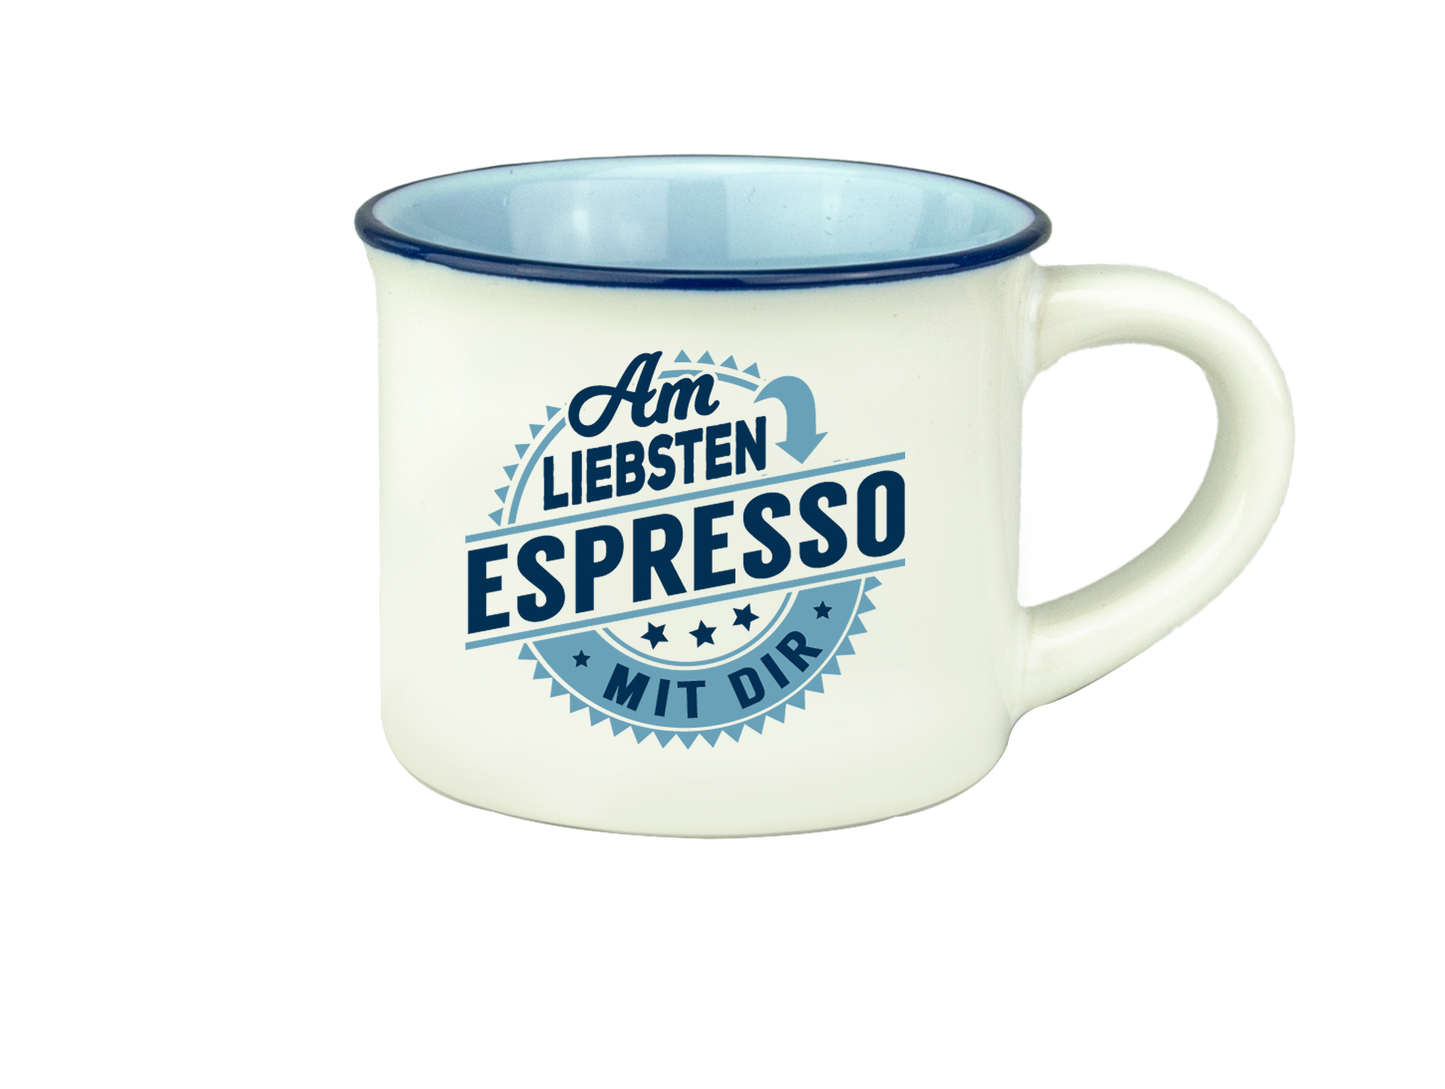 H & H Espresso-Tasse - Am liebsten Espresso mit Dir